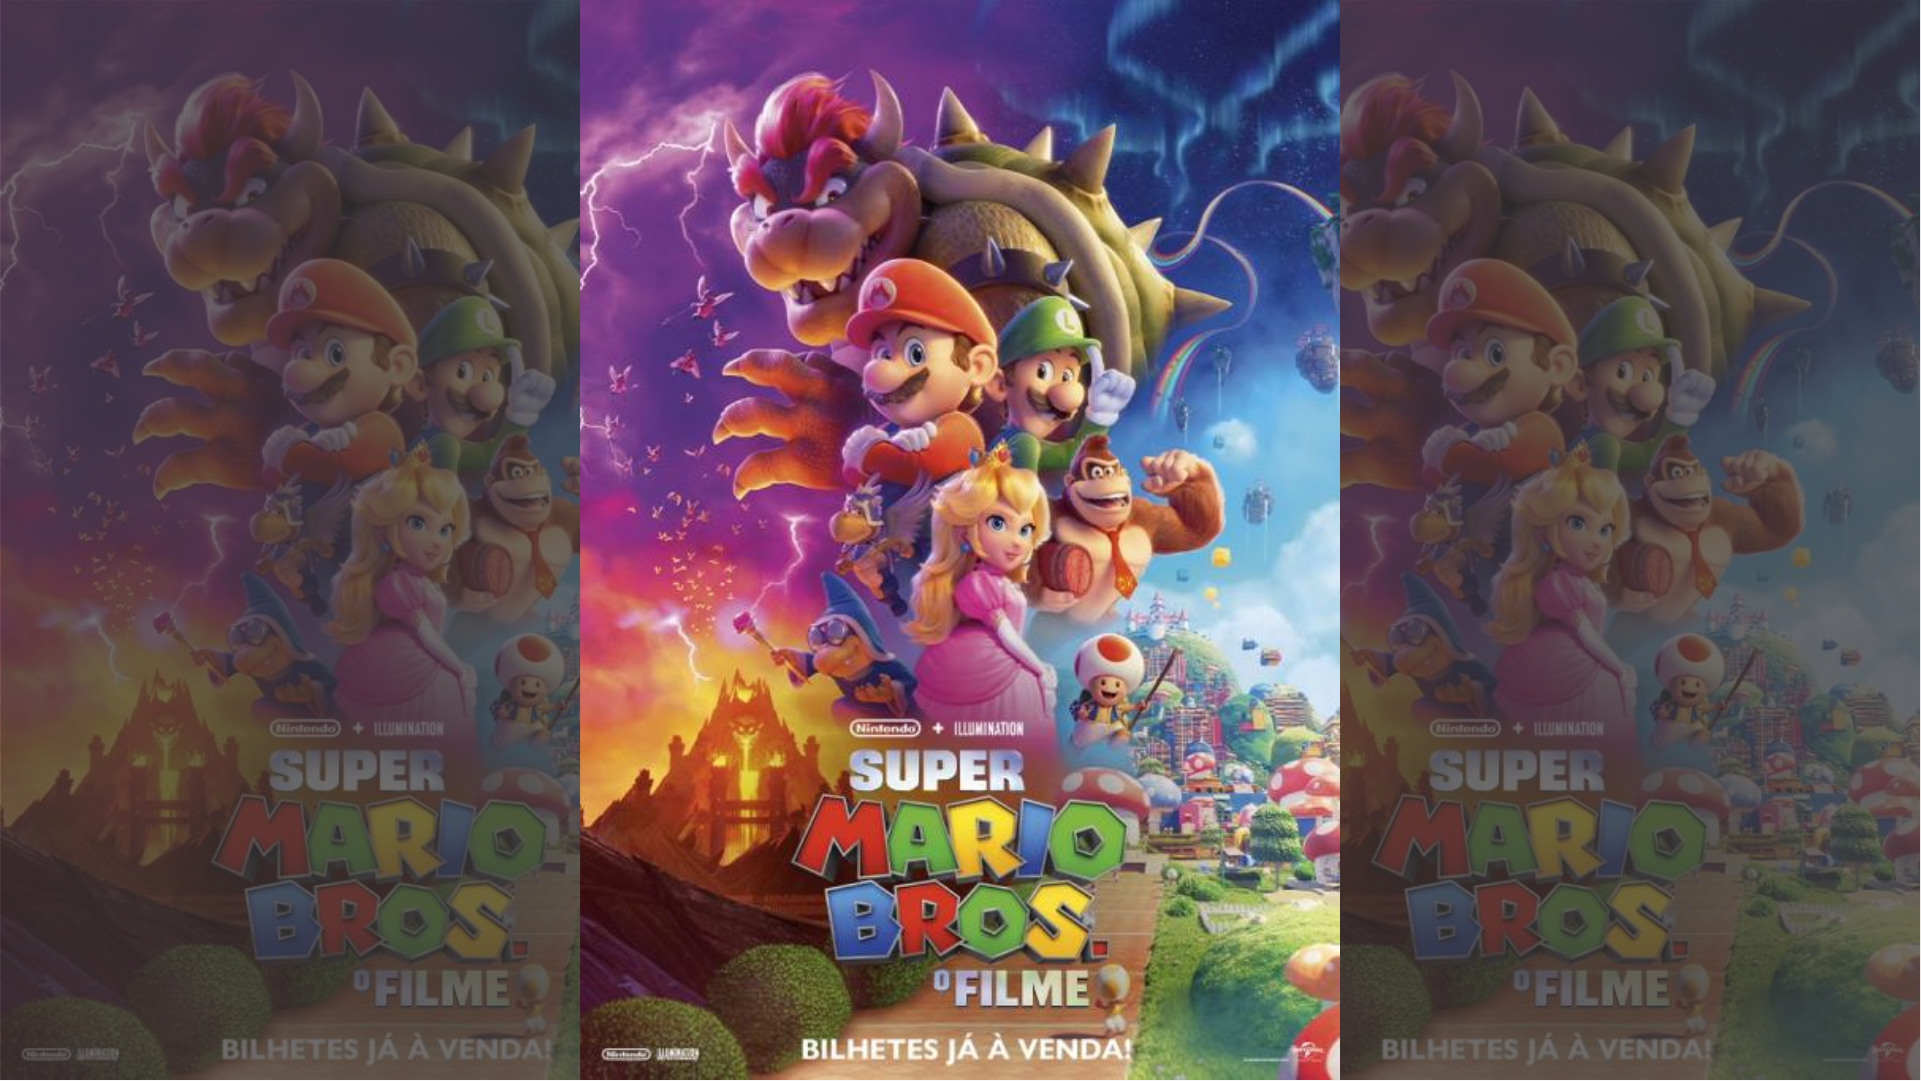 MOVIE - Super Mario Bros. O Filme (2023) 1080p WEB-DL DUAL PT-BR 5.1 Atmos